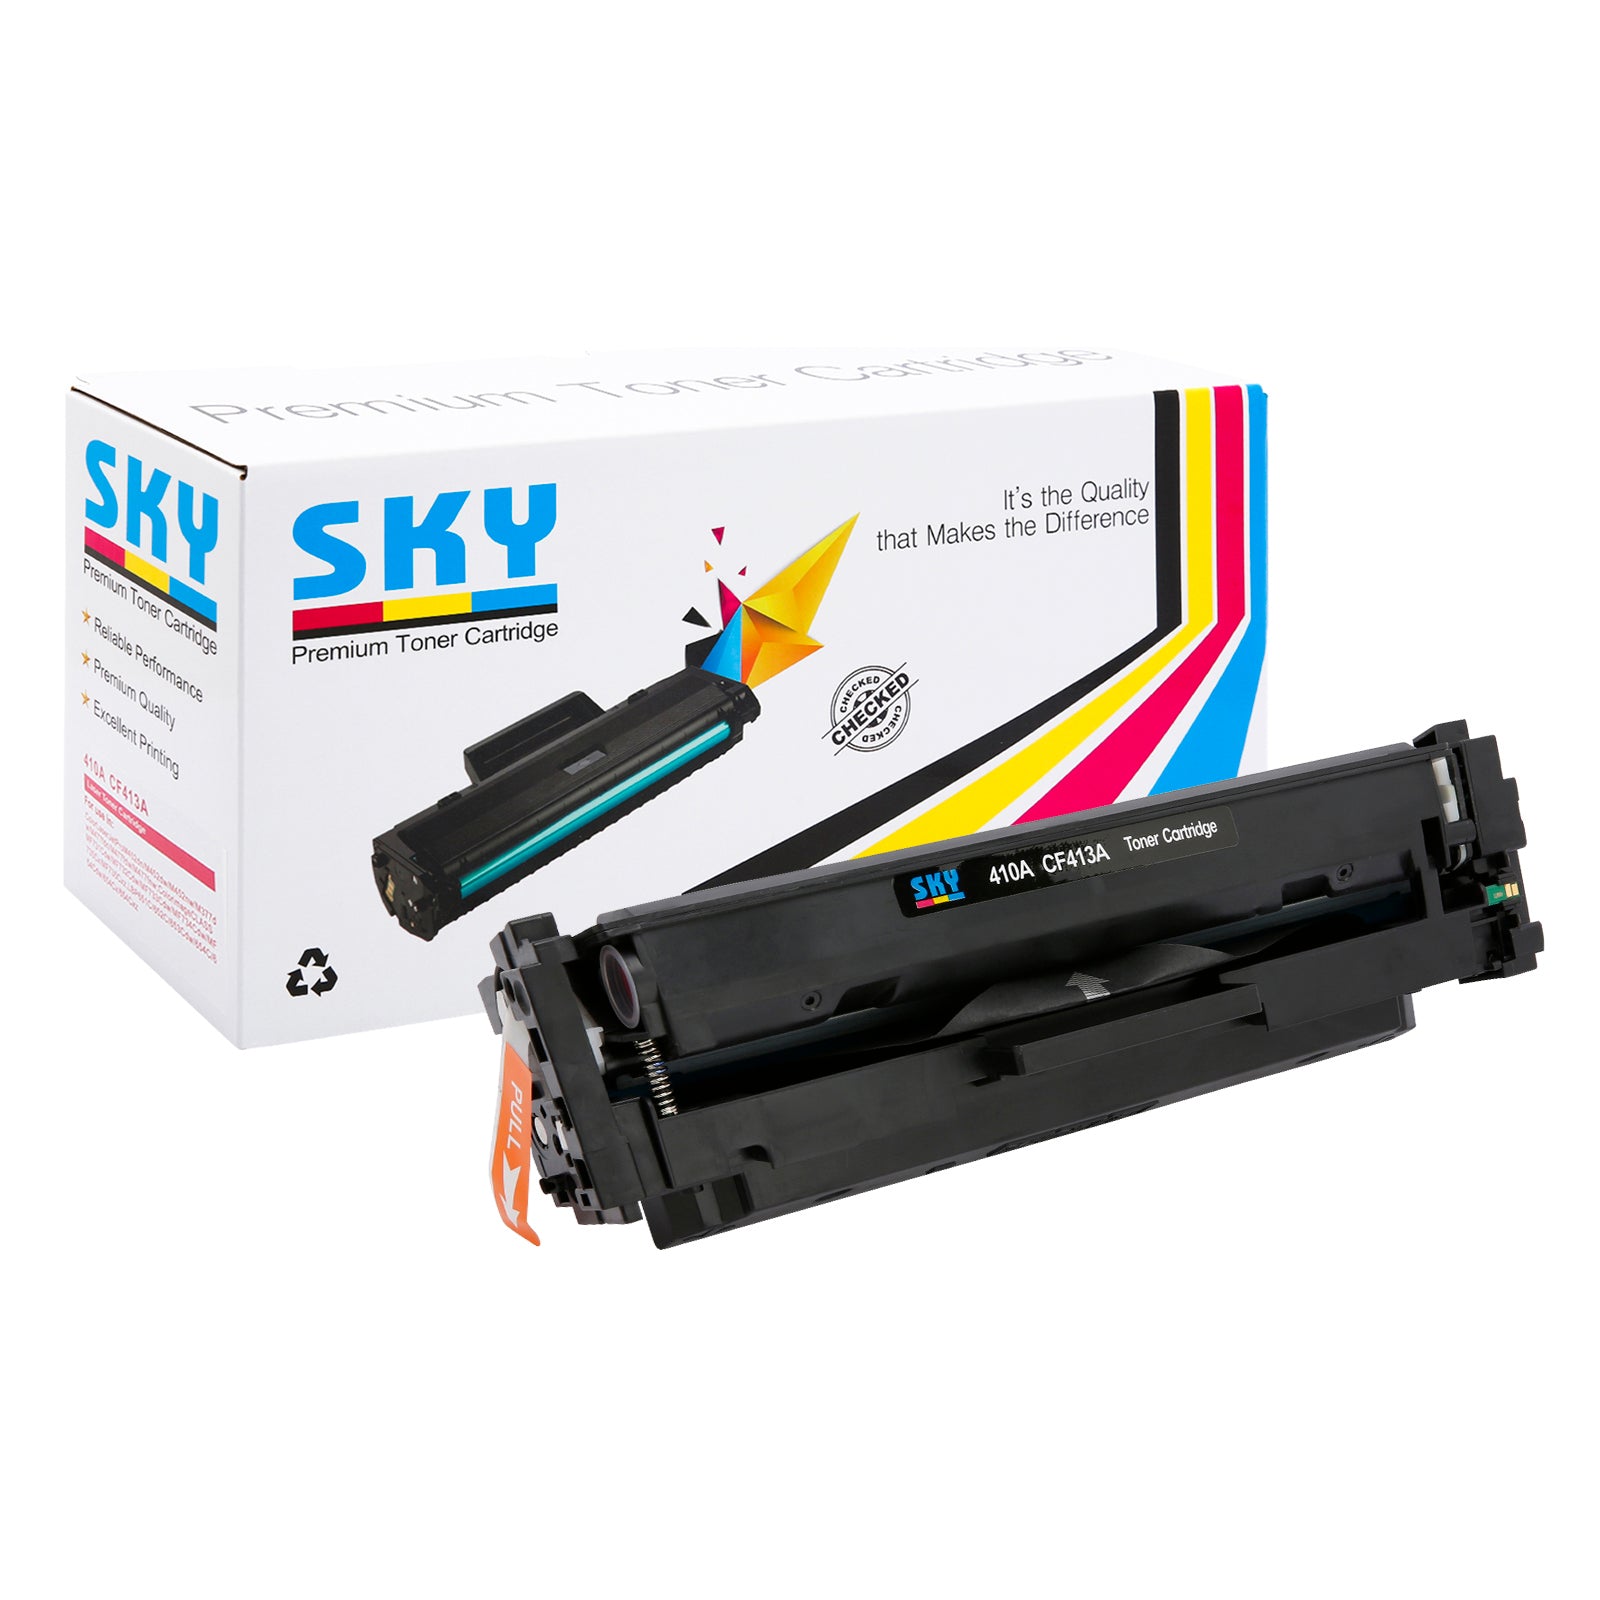 SKY  410A Compatible Toner Cartridges for HP Colour LaserJet Pro M452 M477 and M377